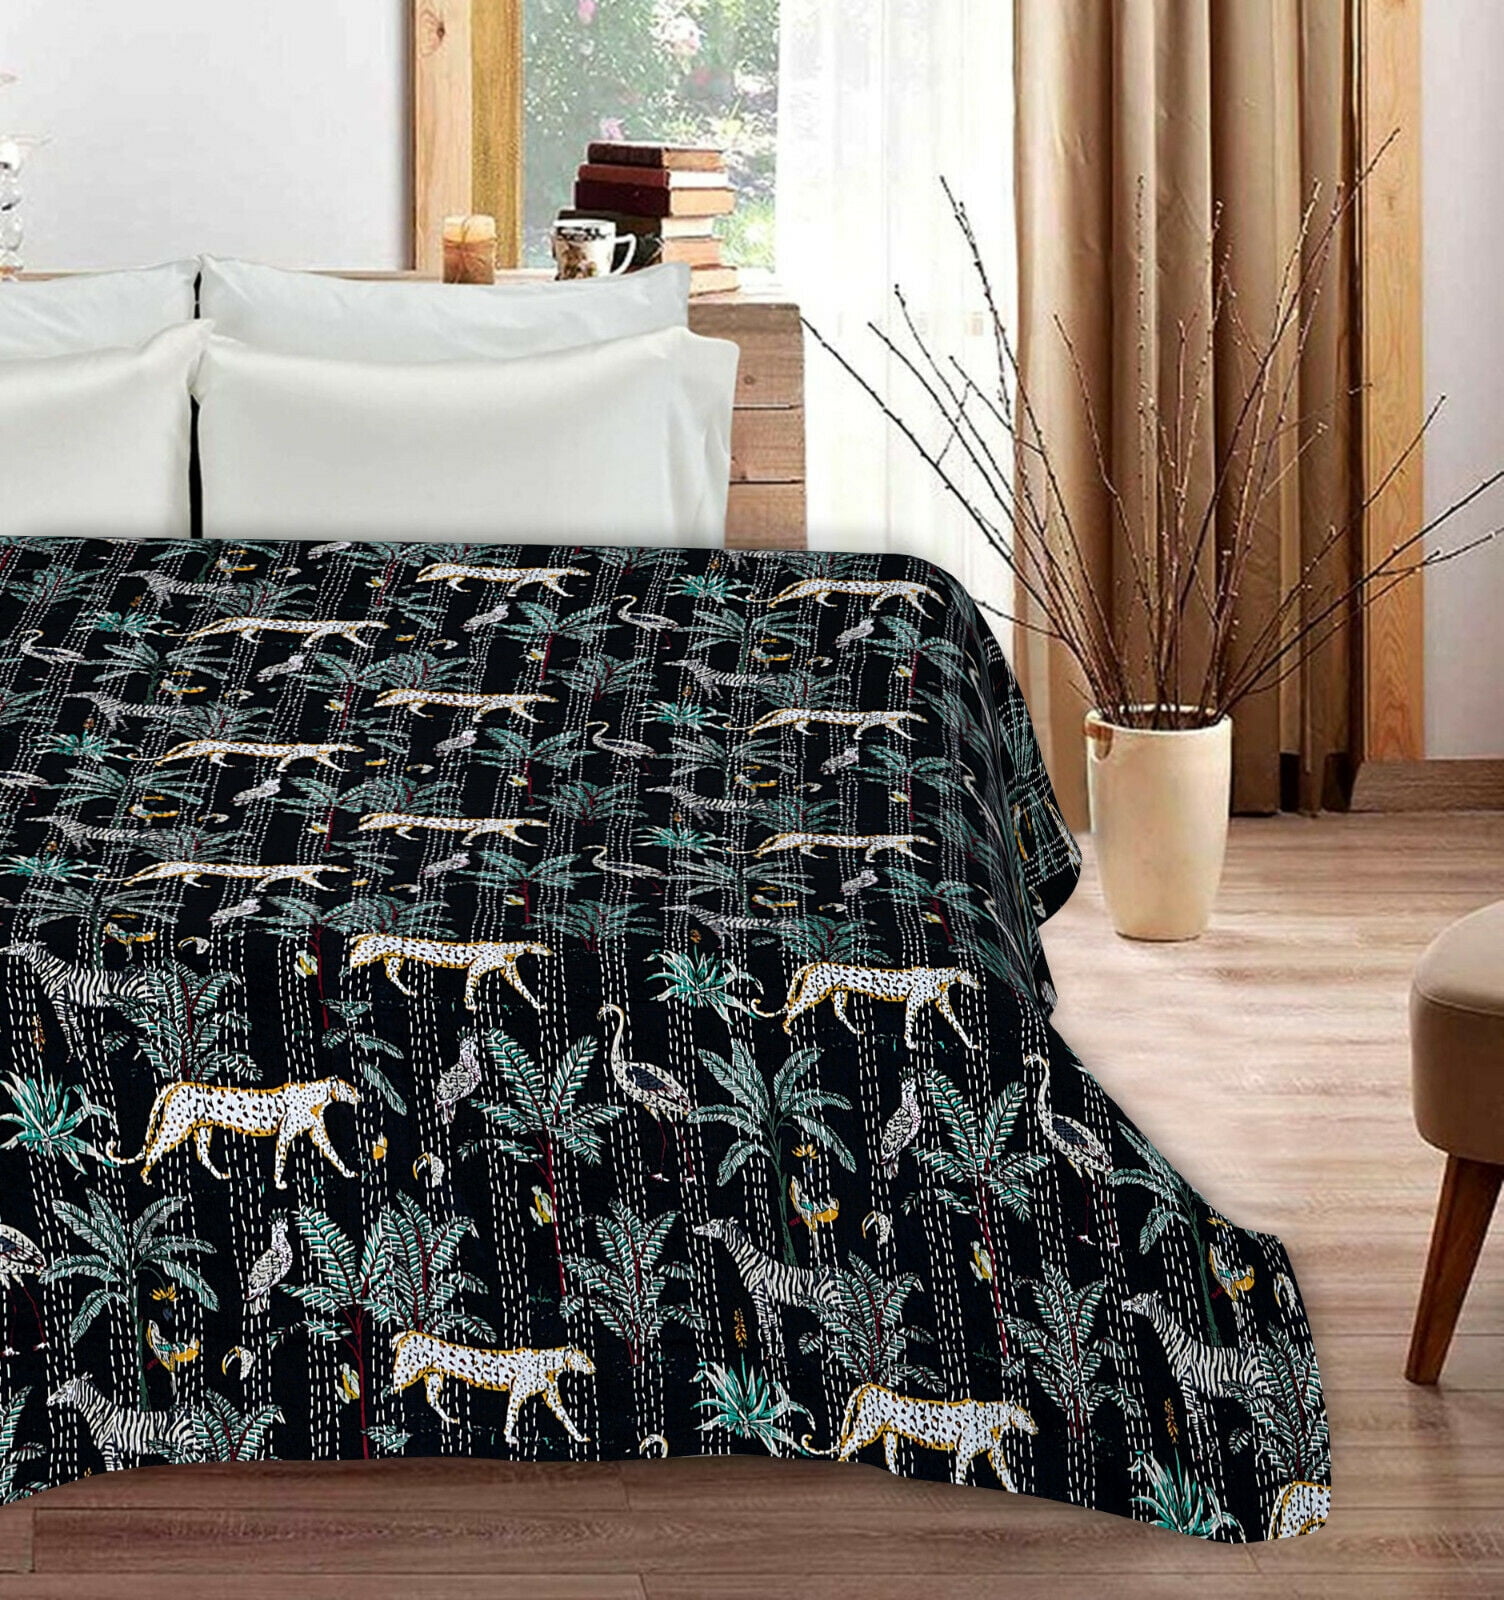 Indian Handmade Bird Kantha Quilt Block Print Bedspread Blue Twin Size 